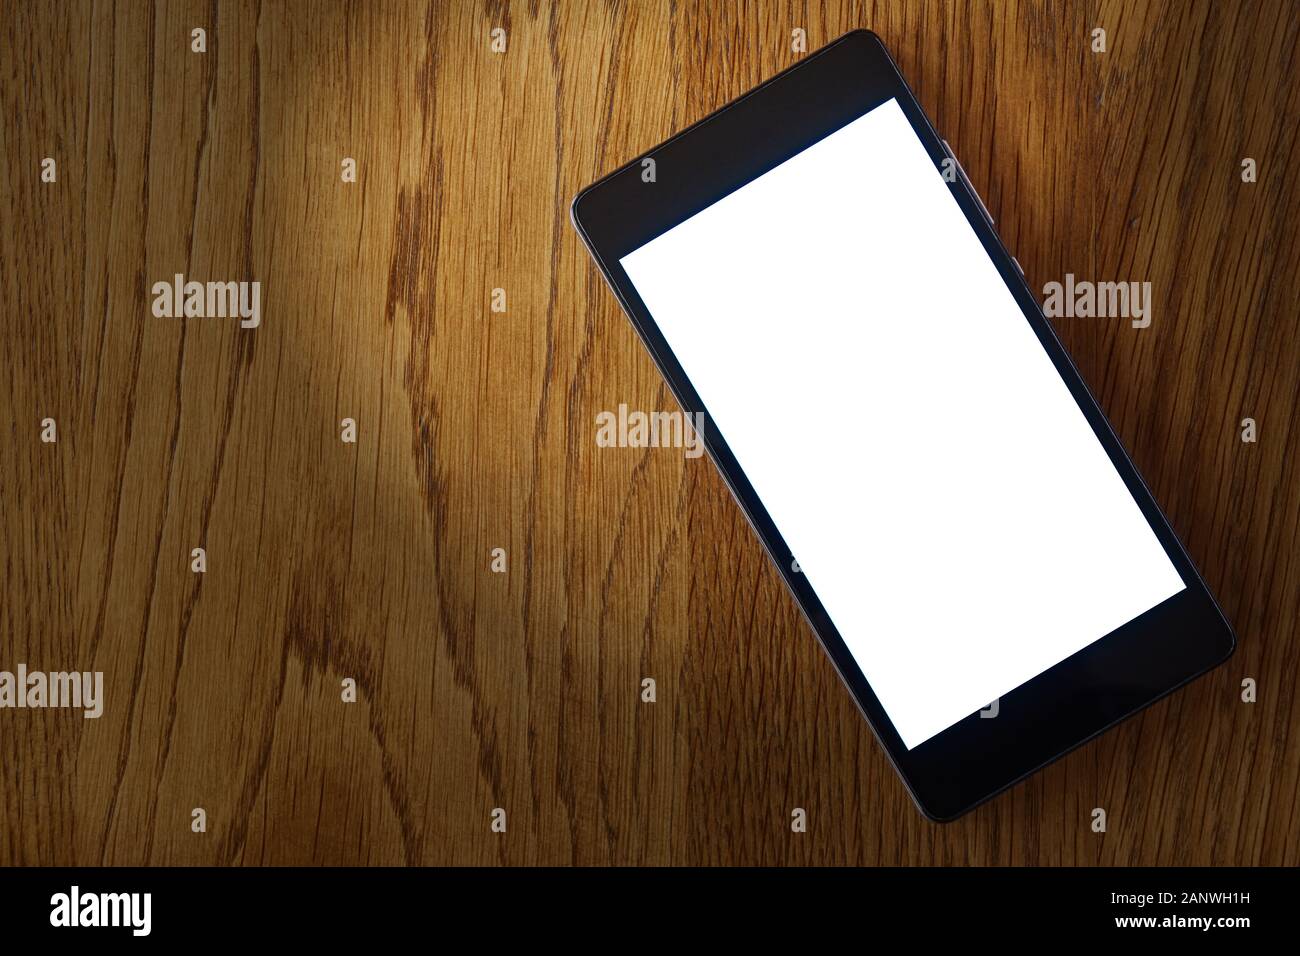 Smartphone avec écran blanc vierge sur table en bois avec projecteur.  Modèle d'écran plat pour téléphone mobile et maquette avec espace de copie  Photo Stock - Alamy